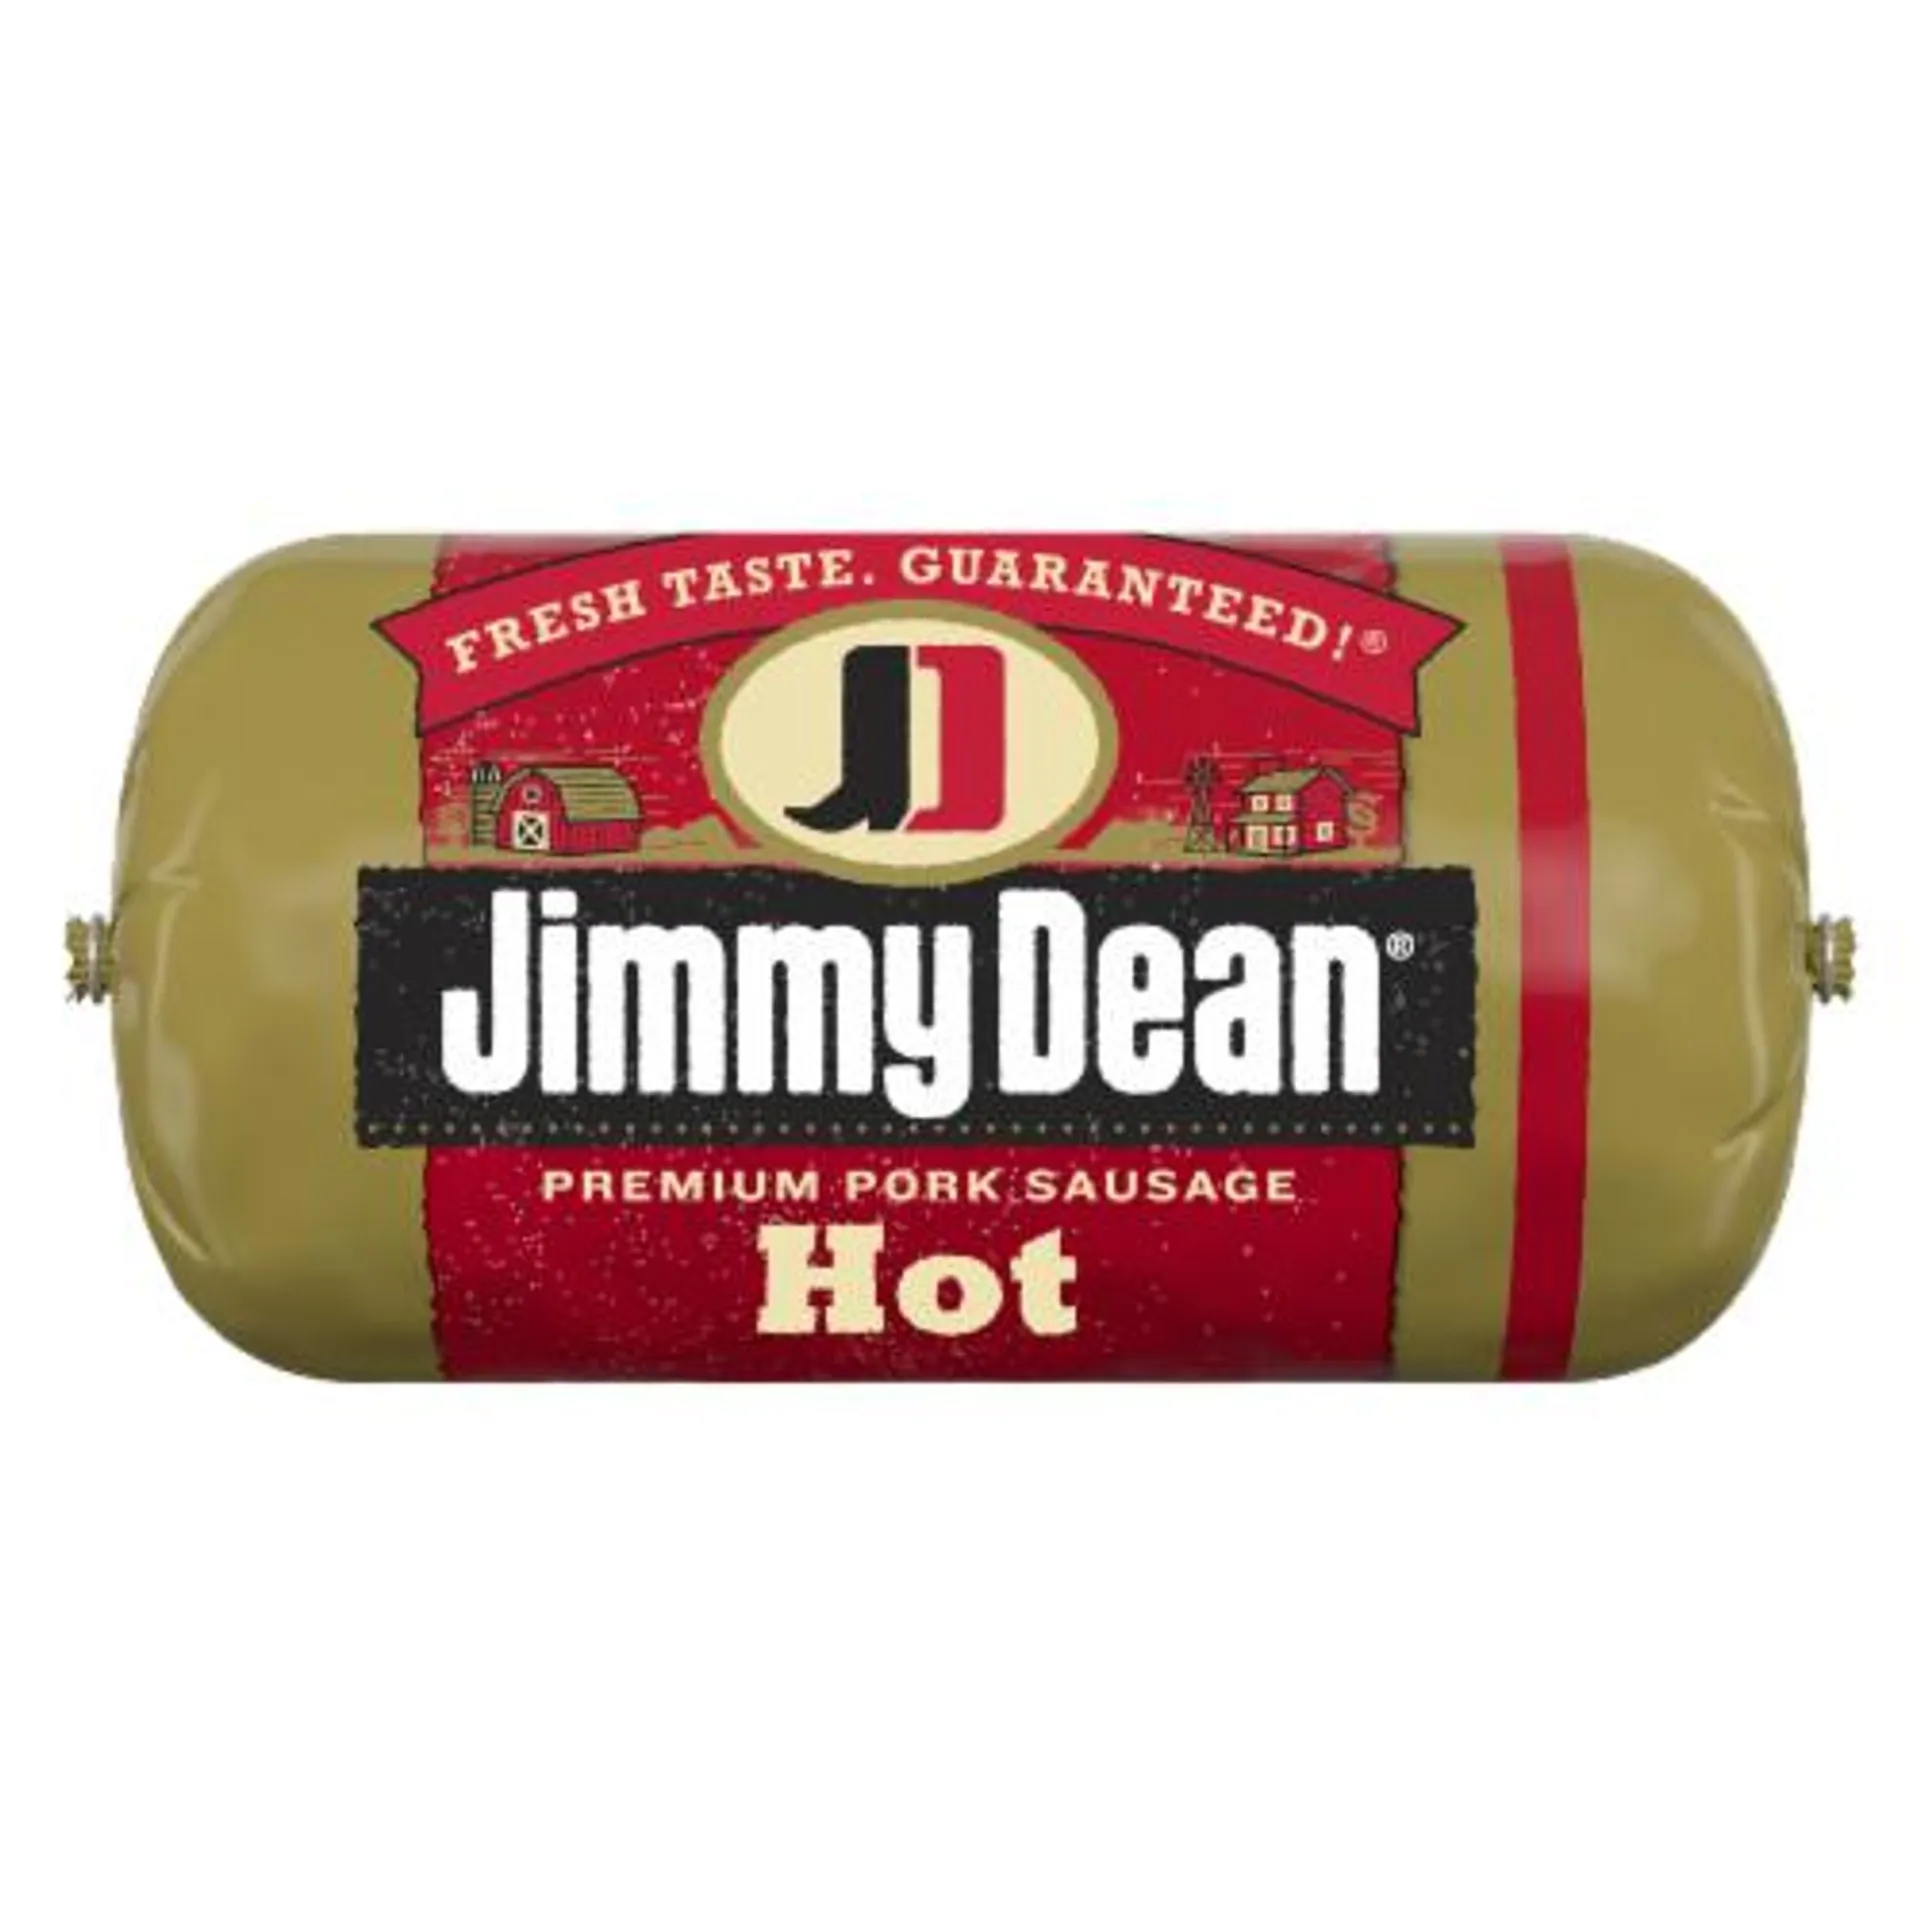 Jimmy Dean® Premium Pork Hot Breakfast Sausage Roll